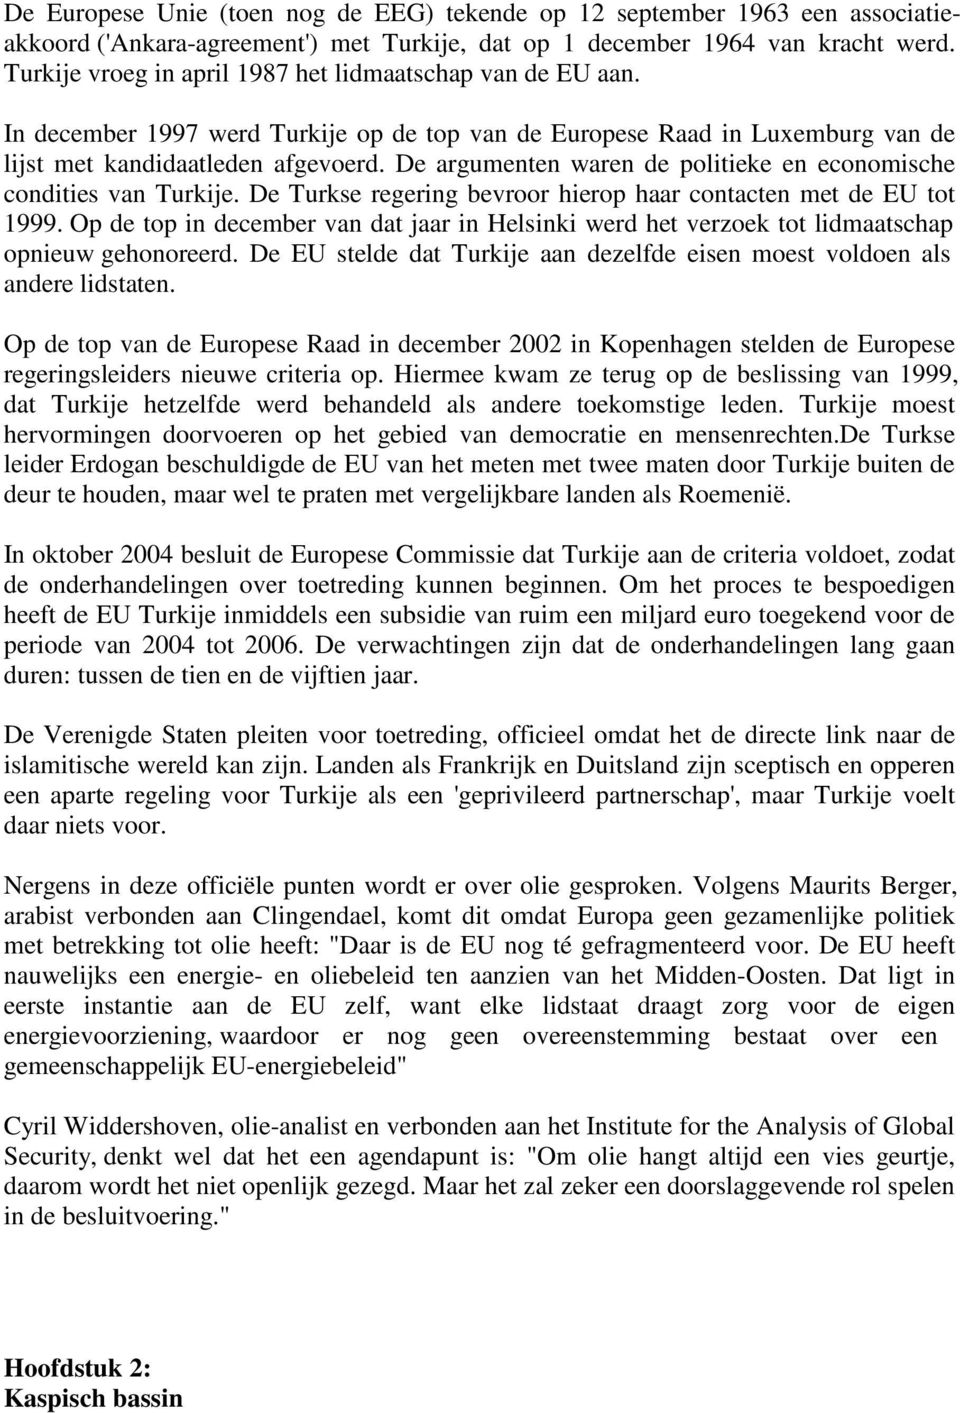 De argumenten waren de politieke en economische condities van Turkije. De Turkse regering bevroor hierop haar contacten met de EU tot 1999.